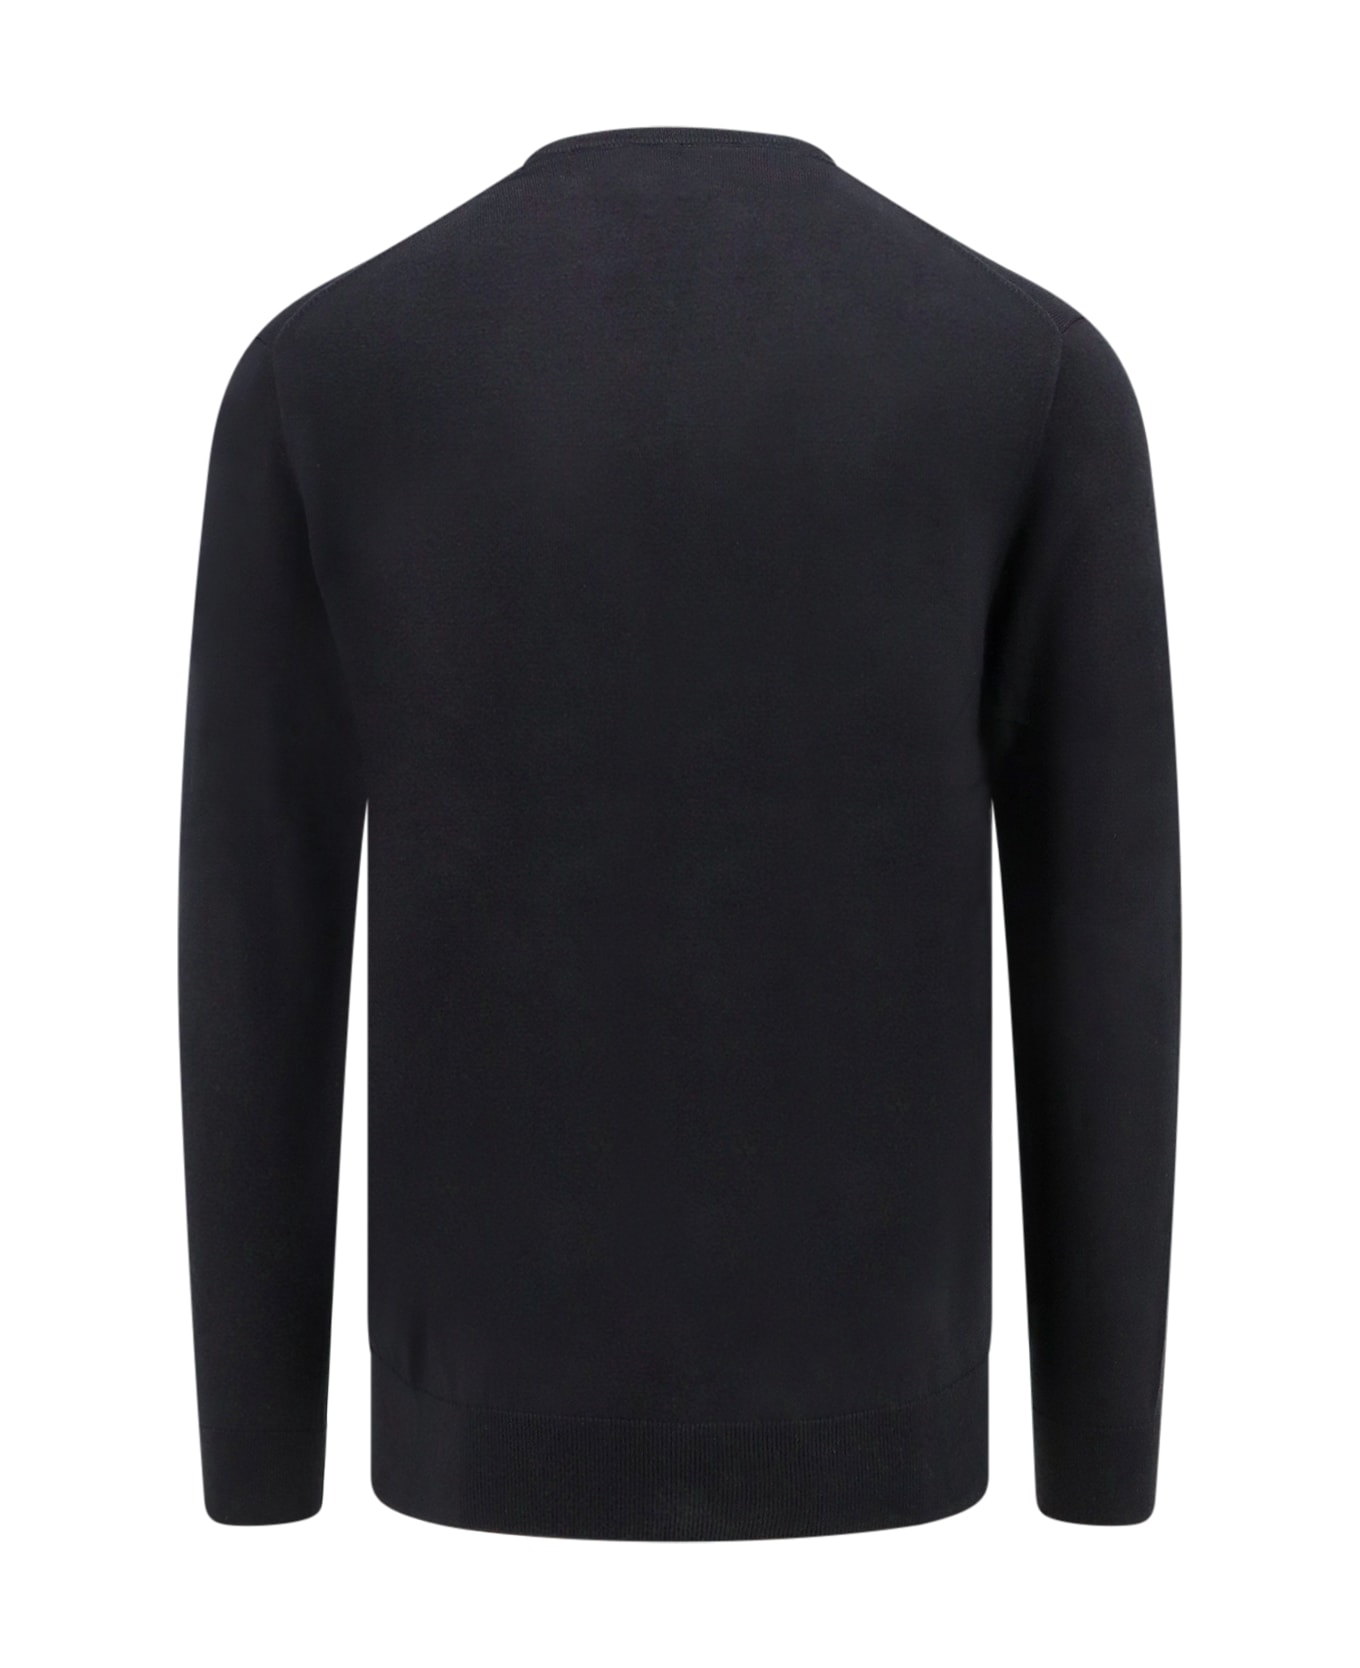 Polo Ralph Lauren Sweater - Black ニットウェア